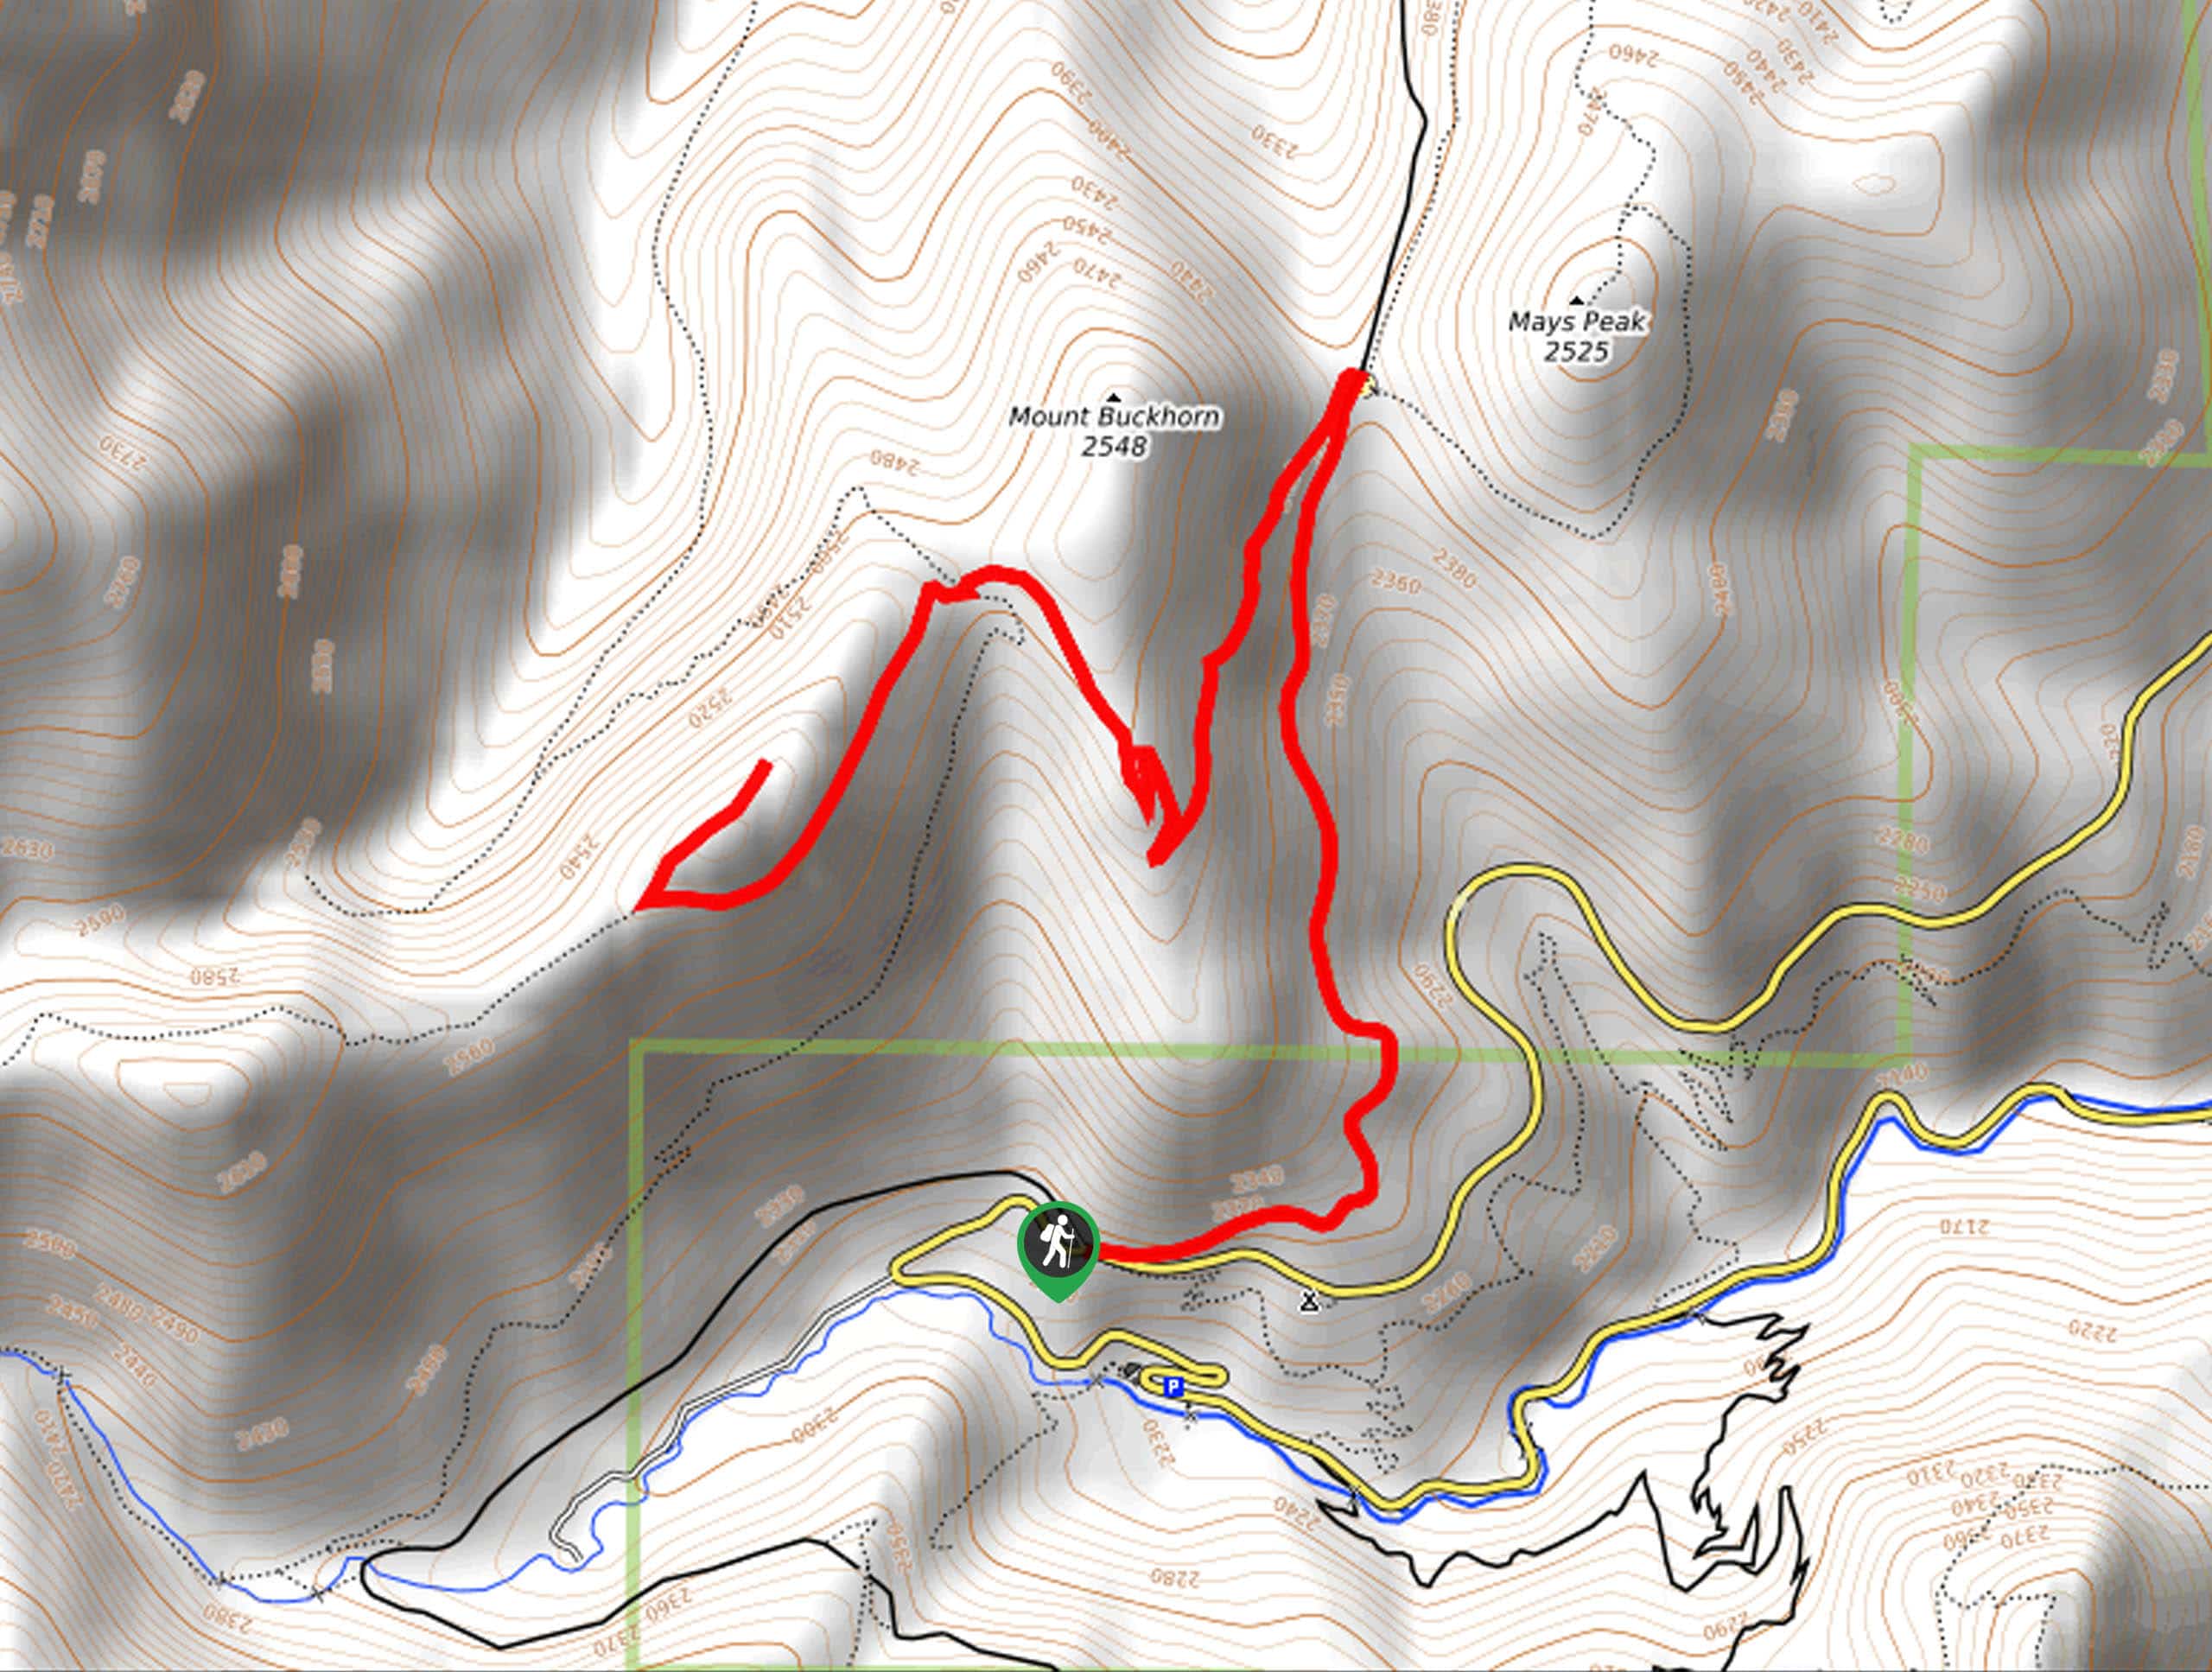 Captain Jack’s Peak Trail Map